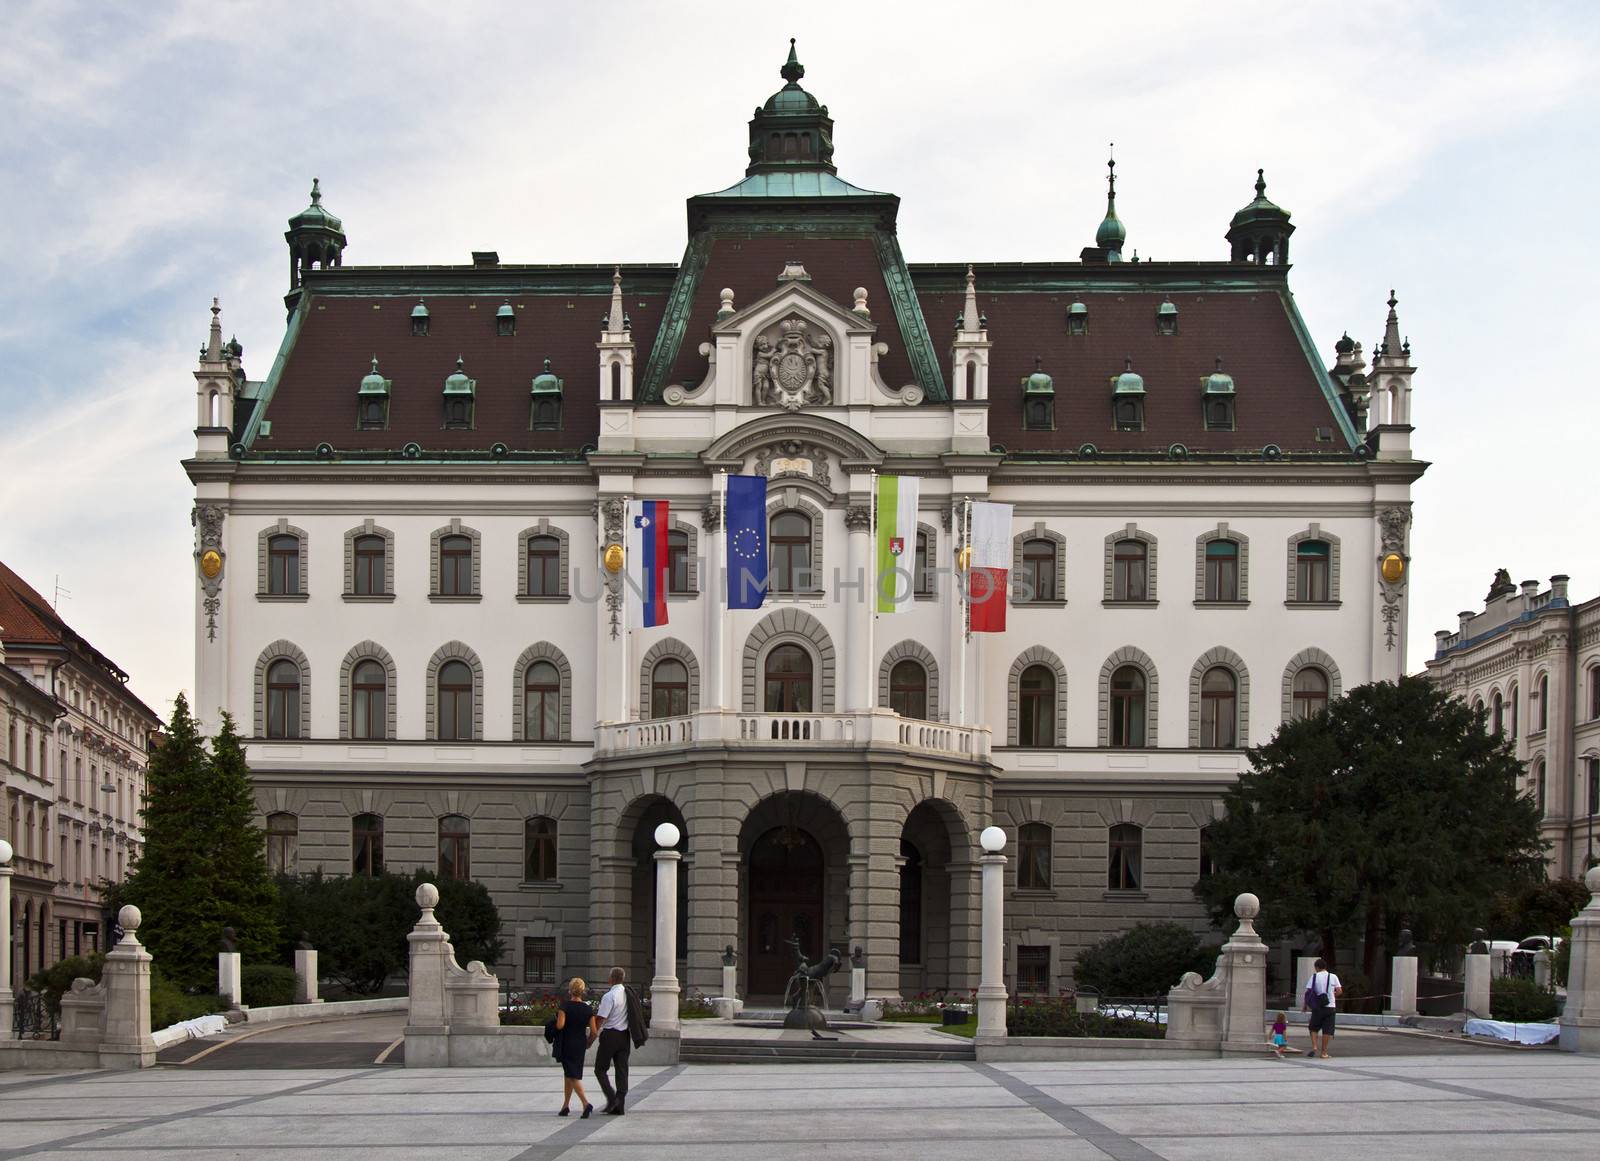 University of Ljubljana by kasto